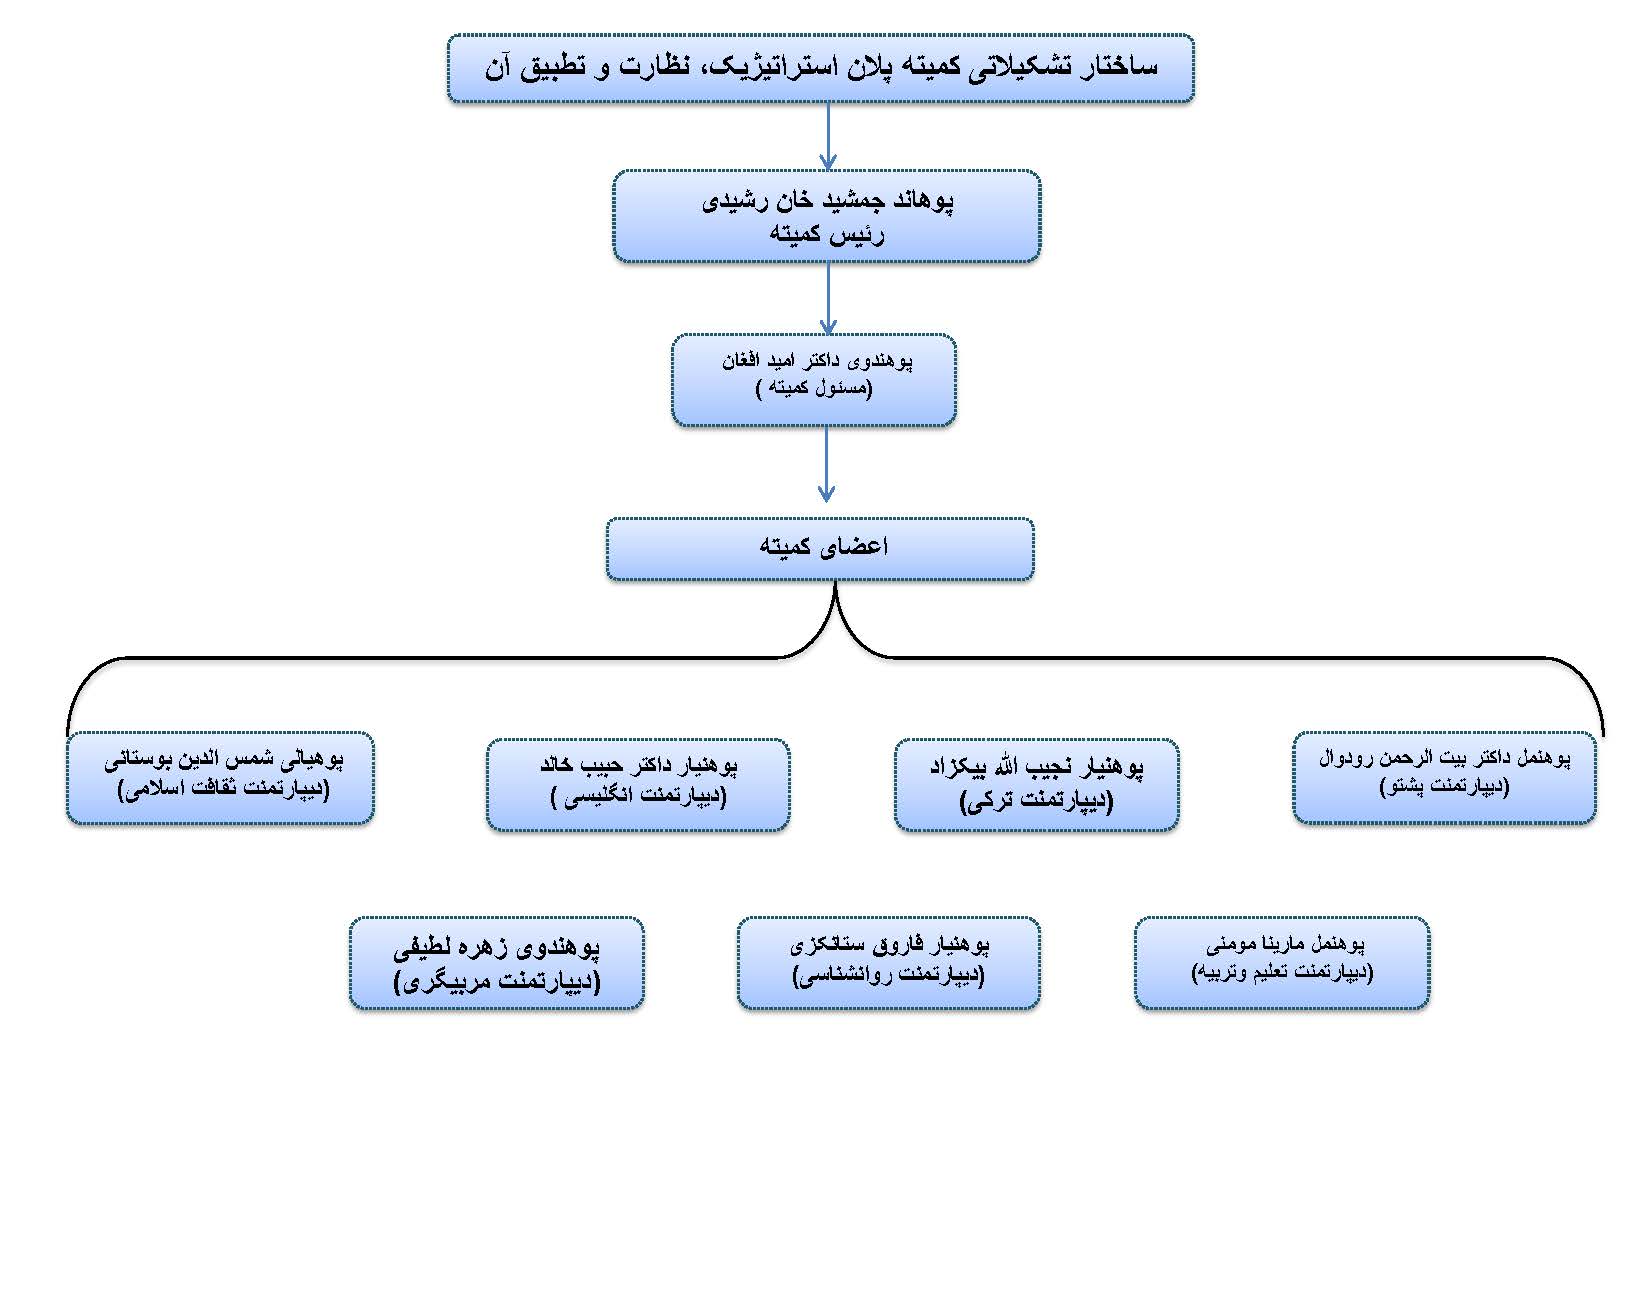 ساختار تشکیلاتی کمیته پلان و اسراتیژیک،نظارت و تطبیق آن